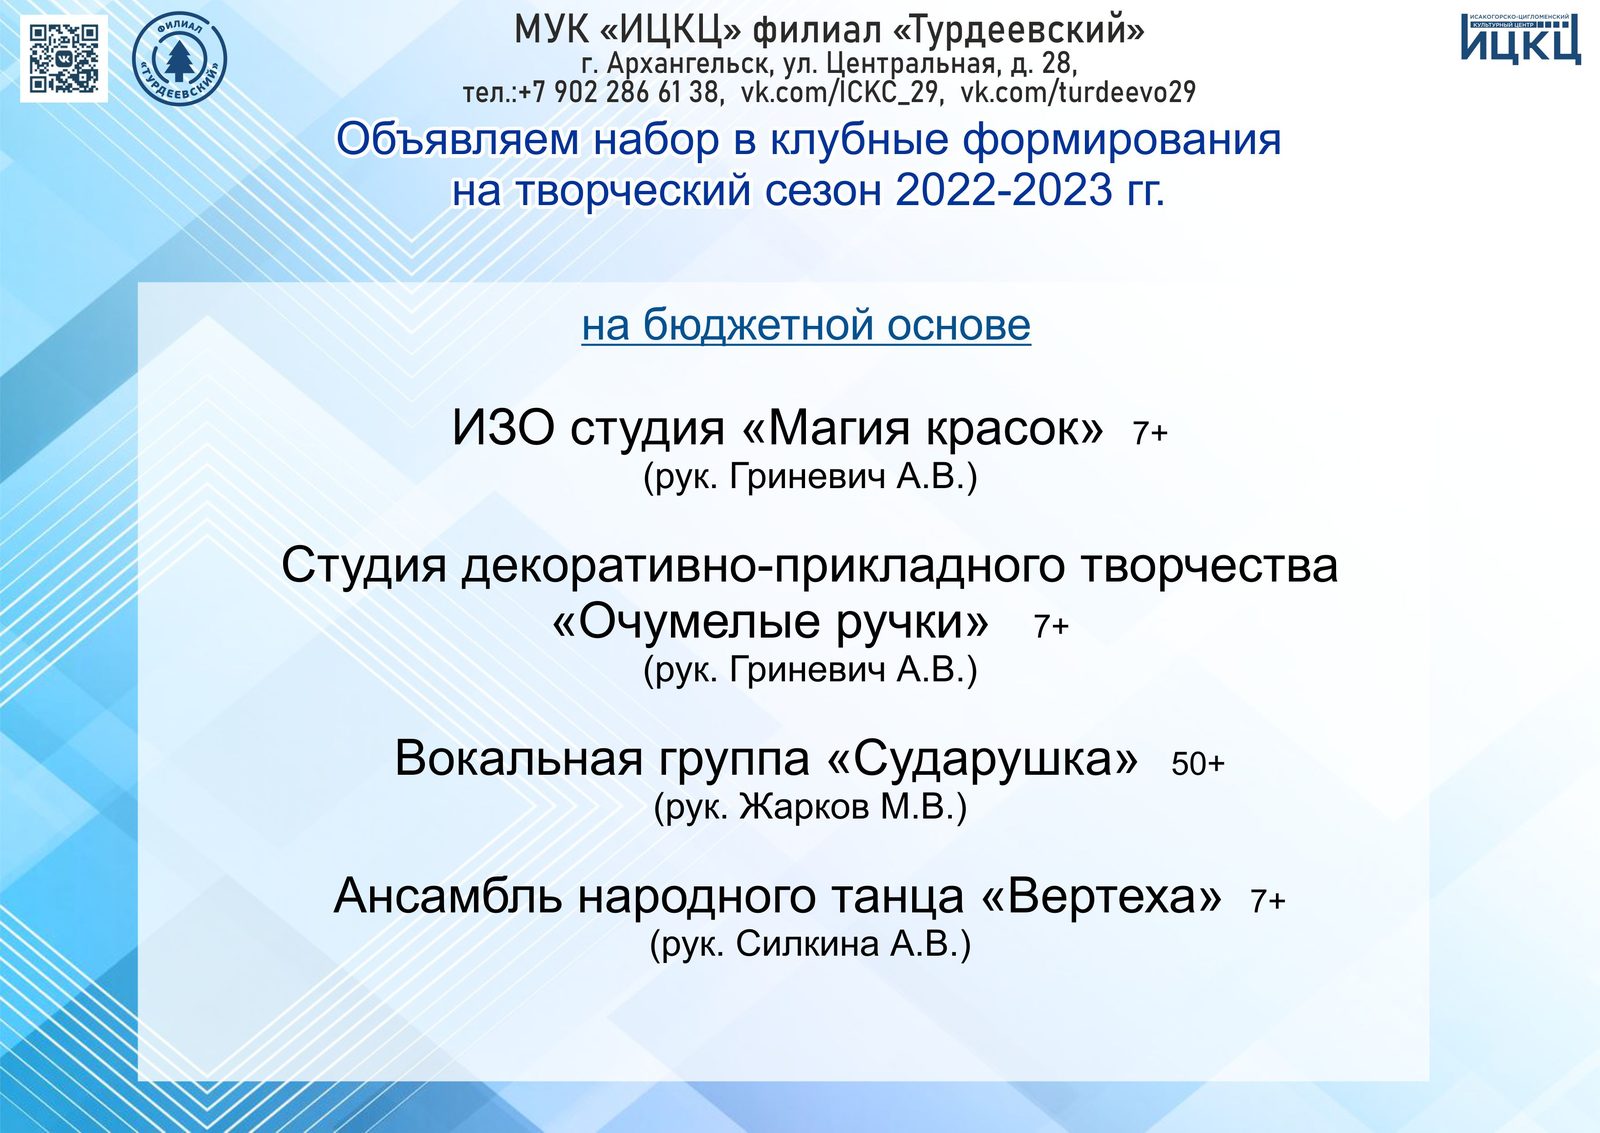 20221001 Набор в клубные формирования на творческий сезон 2022-2023 года